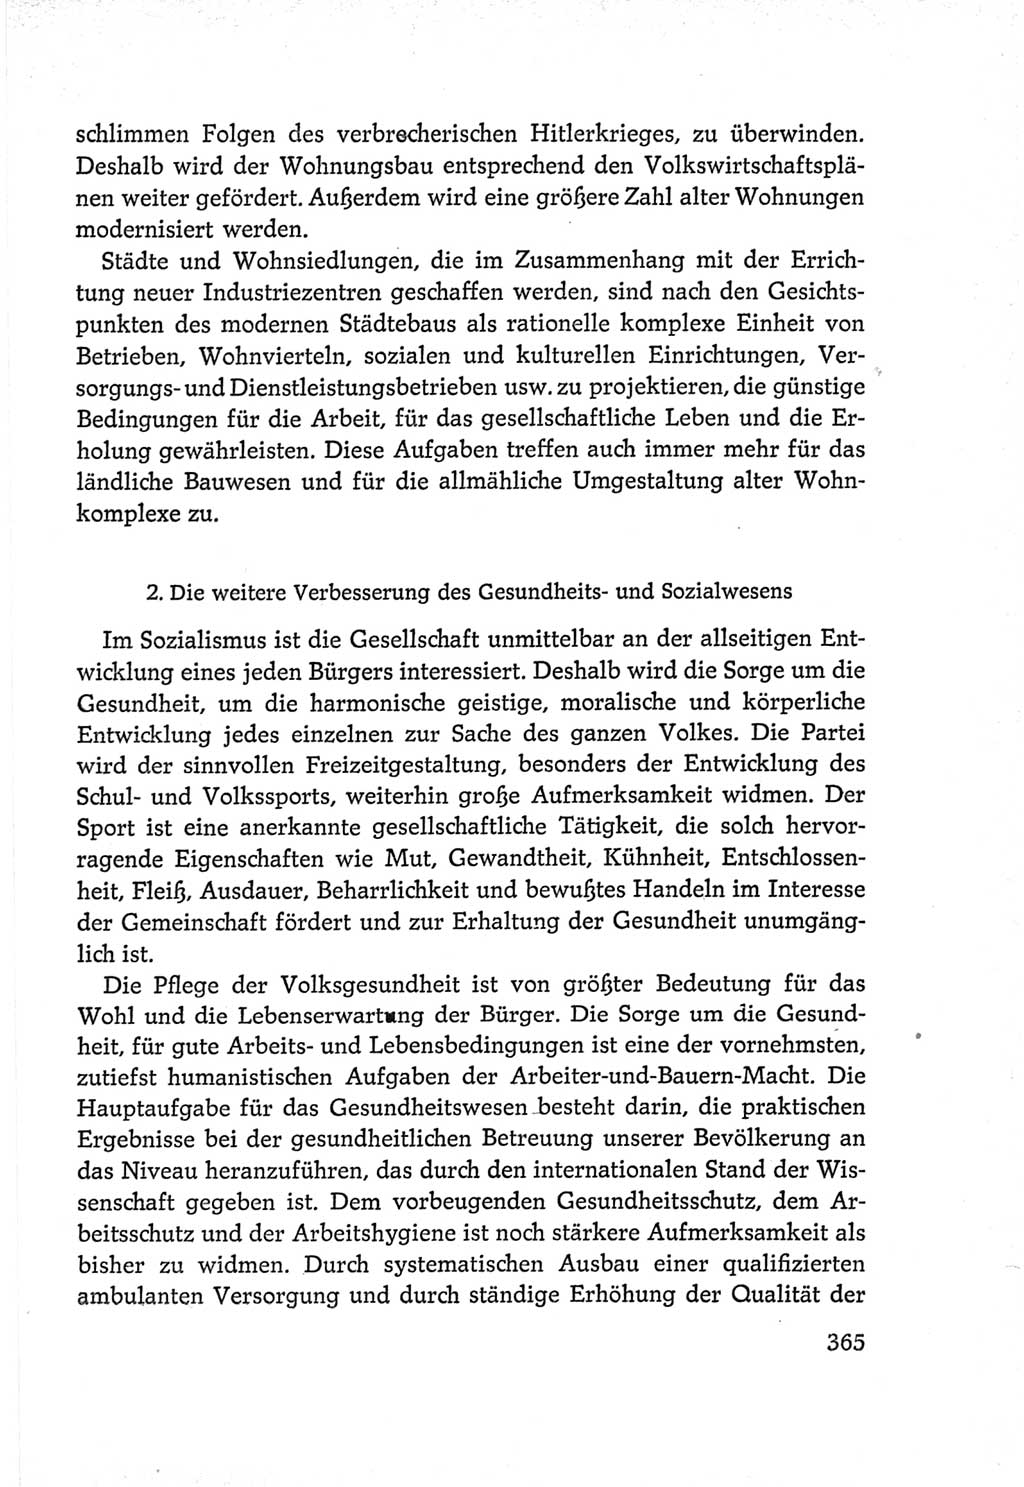 Protokoll der Verhandlungen des Ⅵ. Parteitages der Sozialistischen Einheitspartei Deutschlands (SED) [Deutsche Demokratische Republik (DDR)] 1963, Band Ⅳ, Seite 365 (Prot. Verh. Ⅵ. PT SED DDR 1963, Bd. Ⅳ, S. 365)